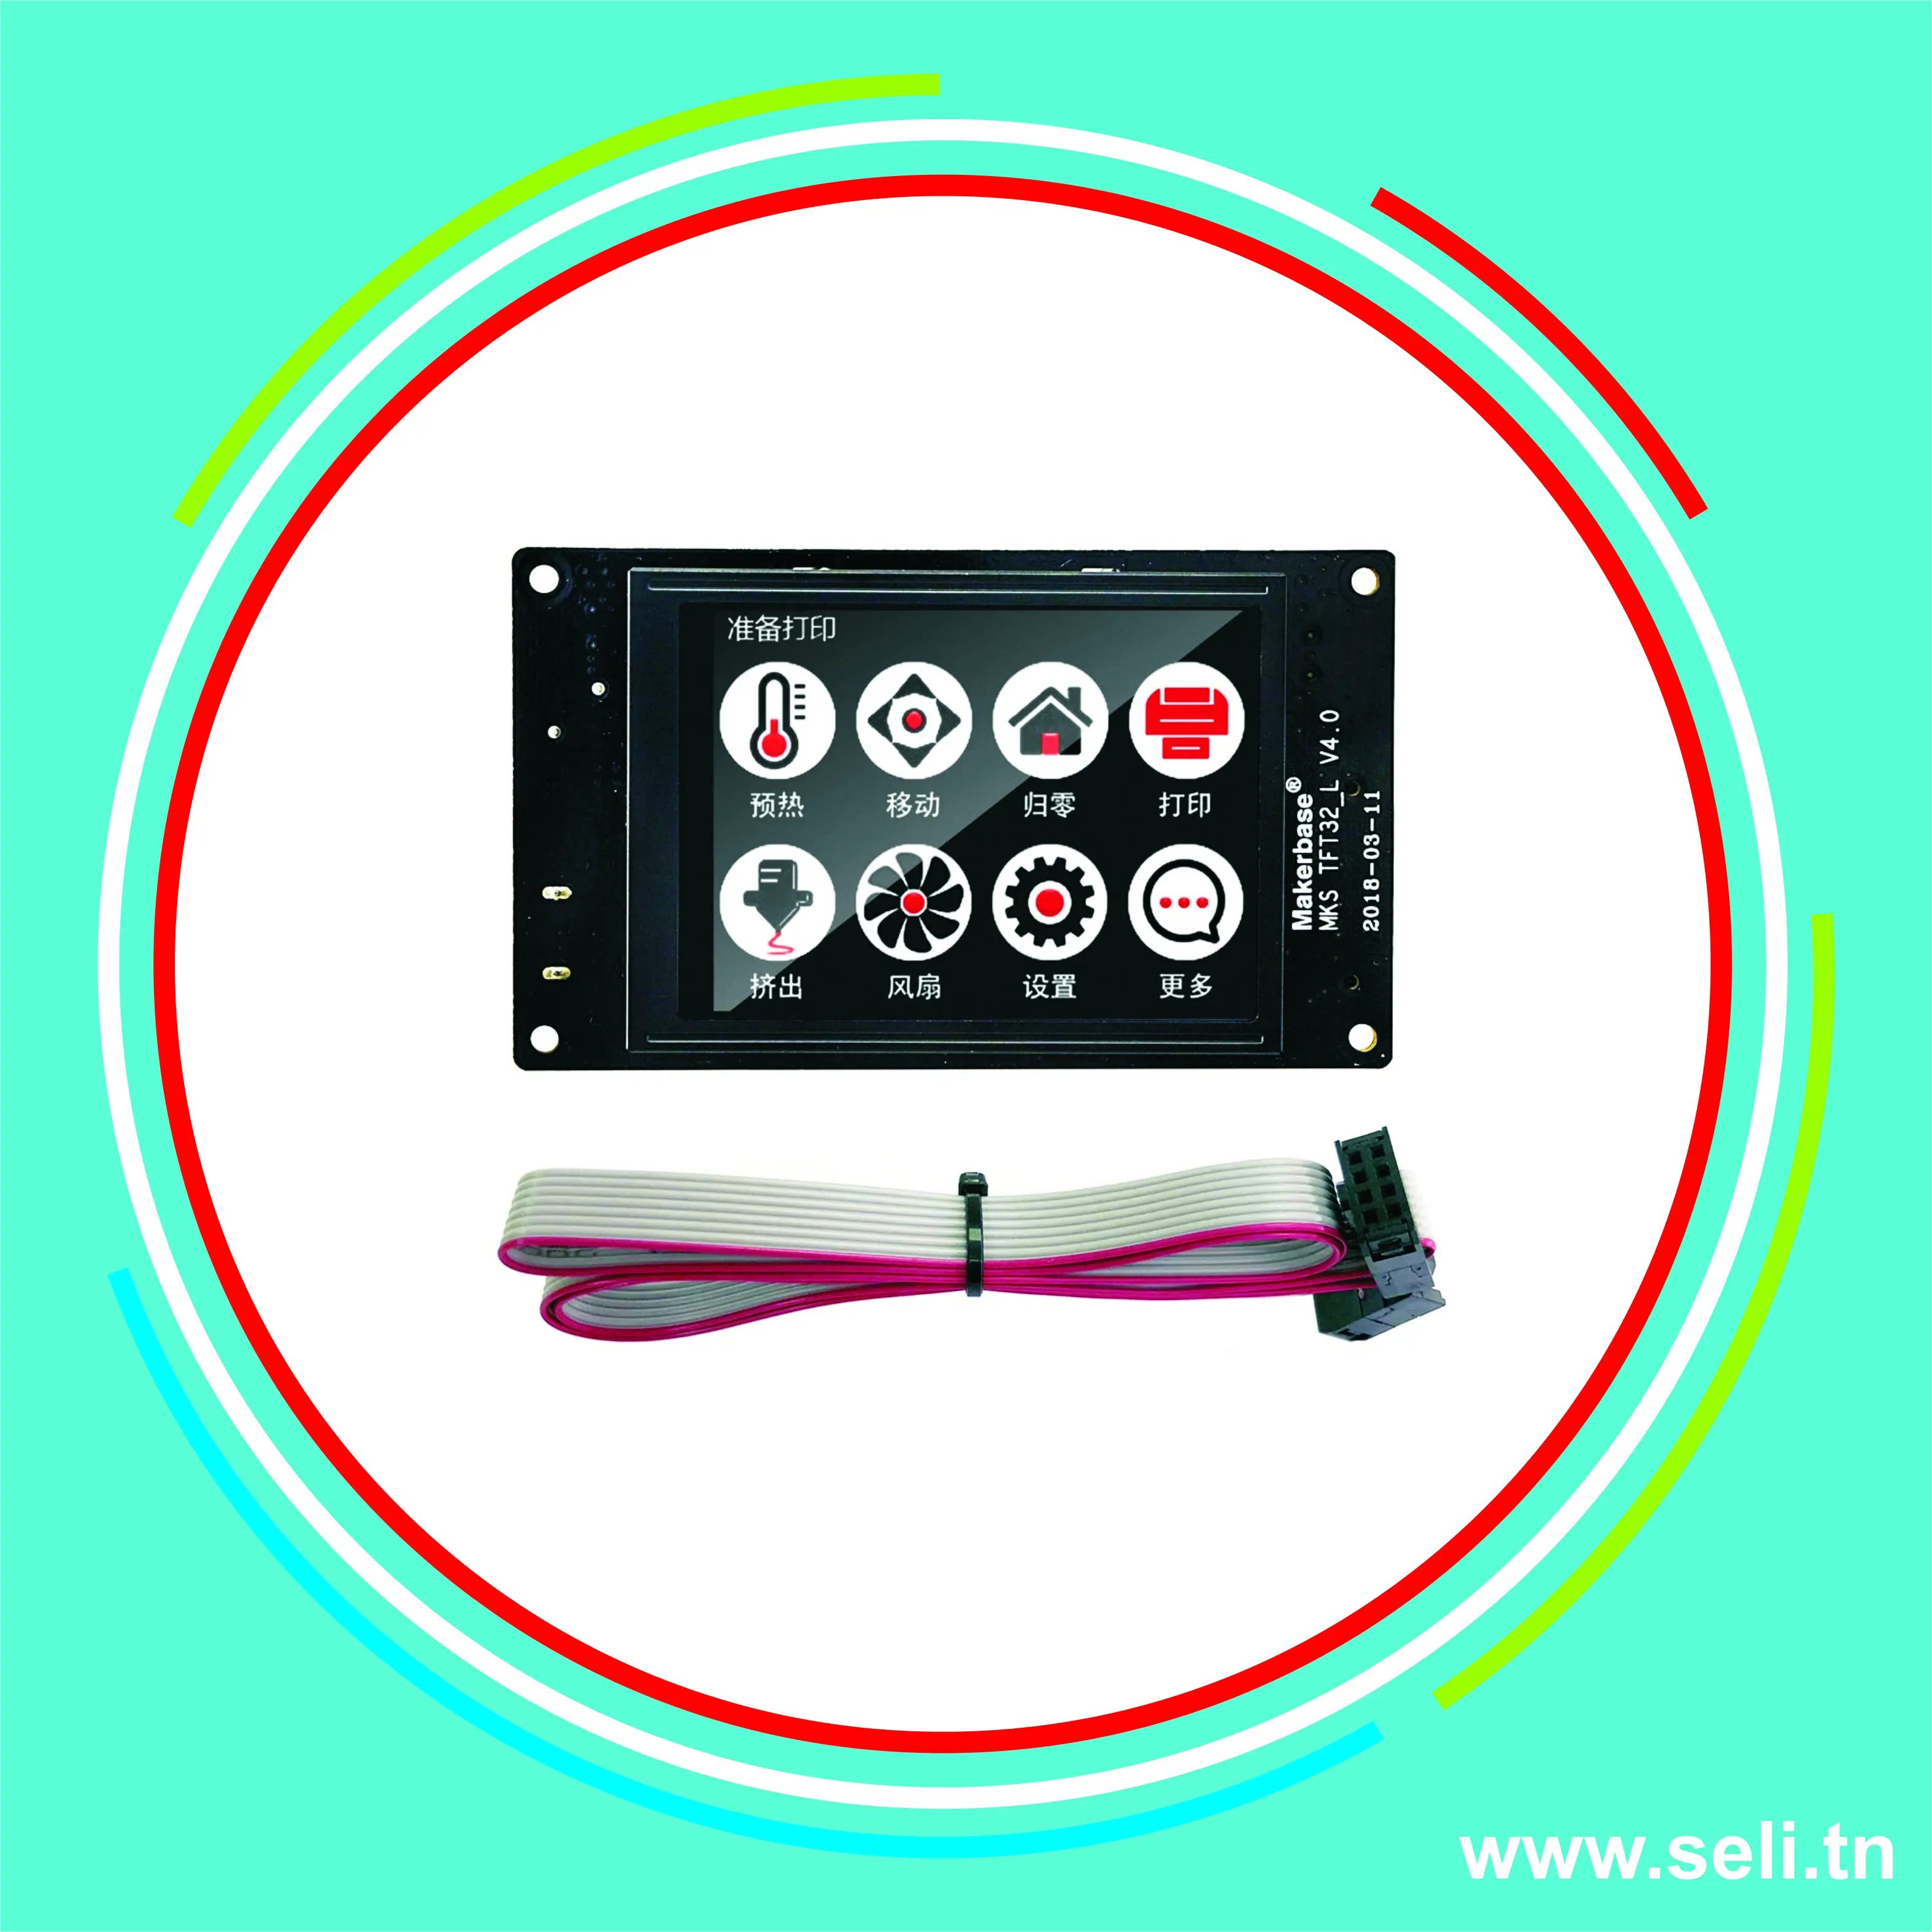 AFFICHEUR TFT32 LCD MAKERBASE  3.2 POUCE  KIT POUR IMPRIMANTE 3D .Arduino tunisie